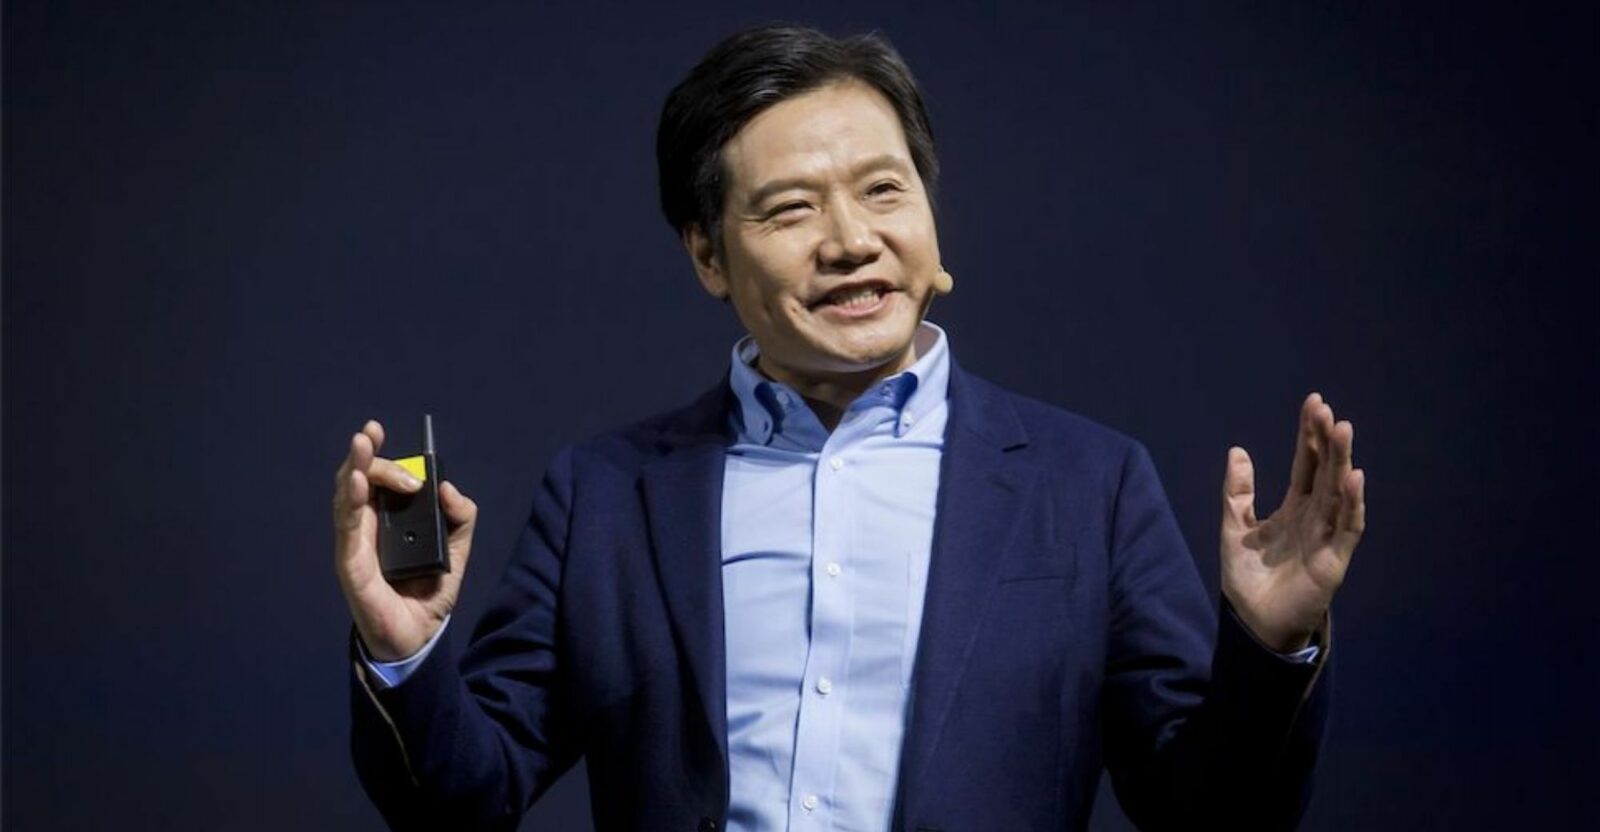 Xiaomi est toujours convaincu qu'il deviendra le leader du marché mondial des smartphones au cours des 3 prochaines années